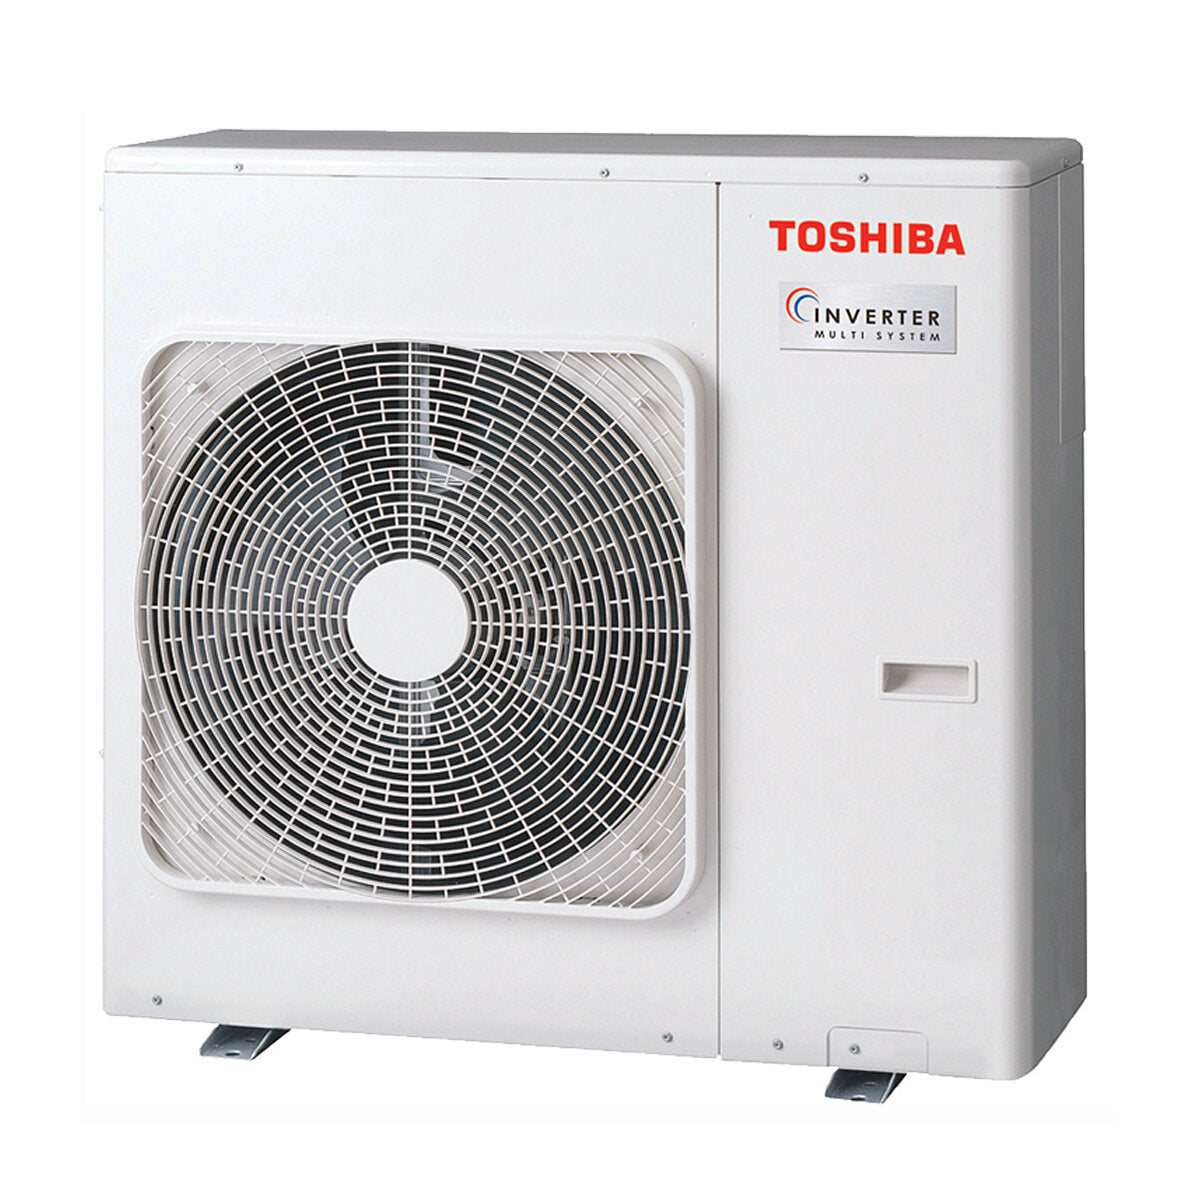 Toshiba Ductable Air Conditioner U2 penta split 7000 + 7000 + 9000 + 9000 + 12000 BTU inverter A++ unité extérieure 10,0 kW